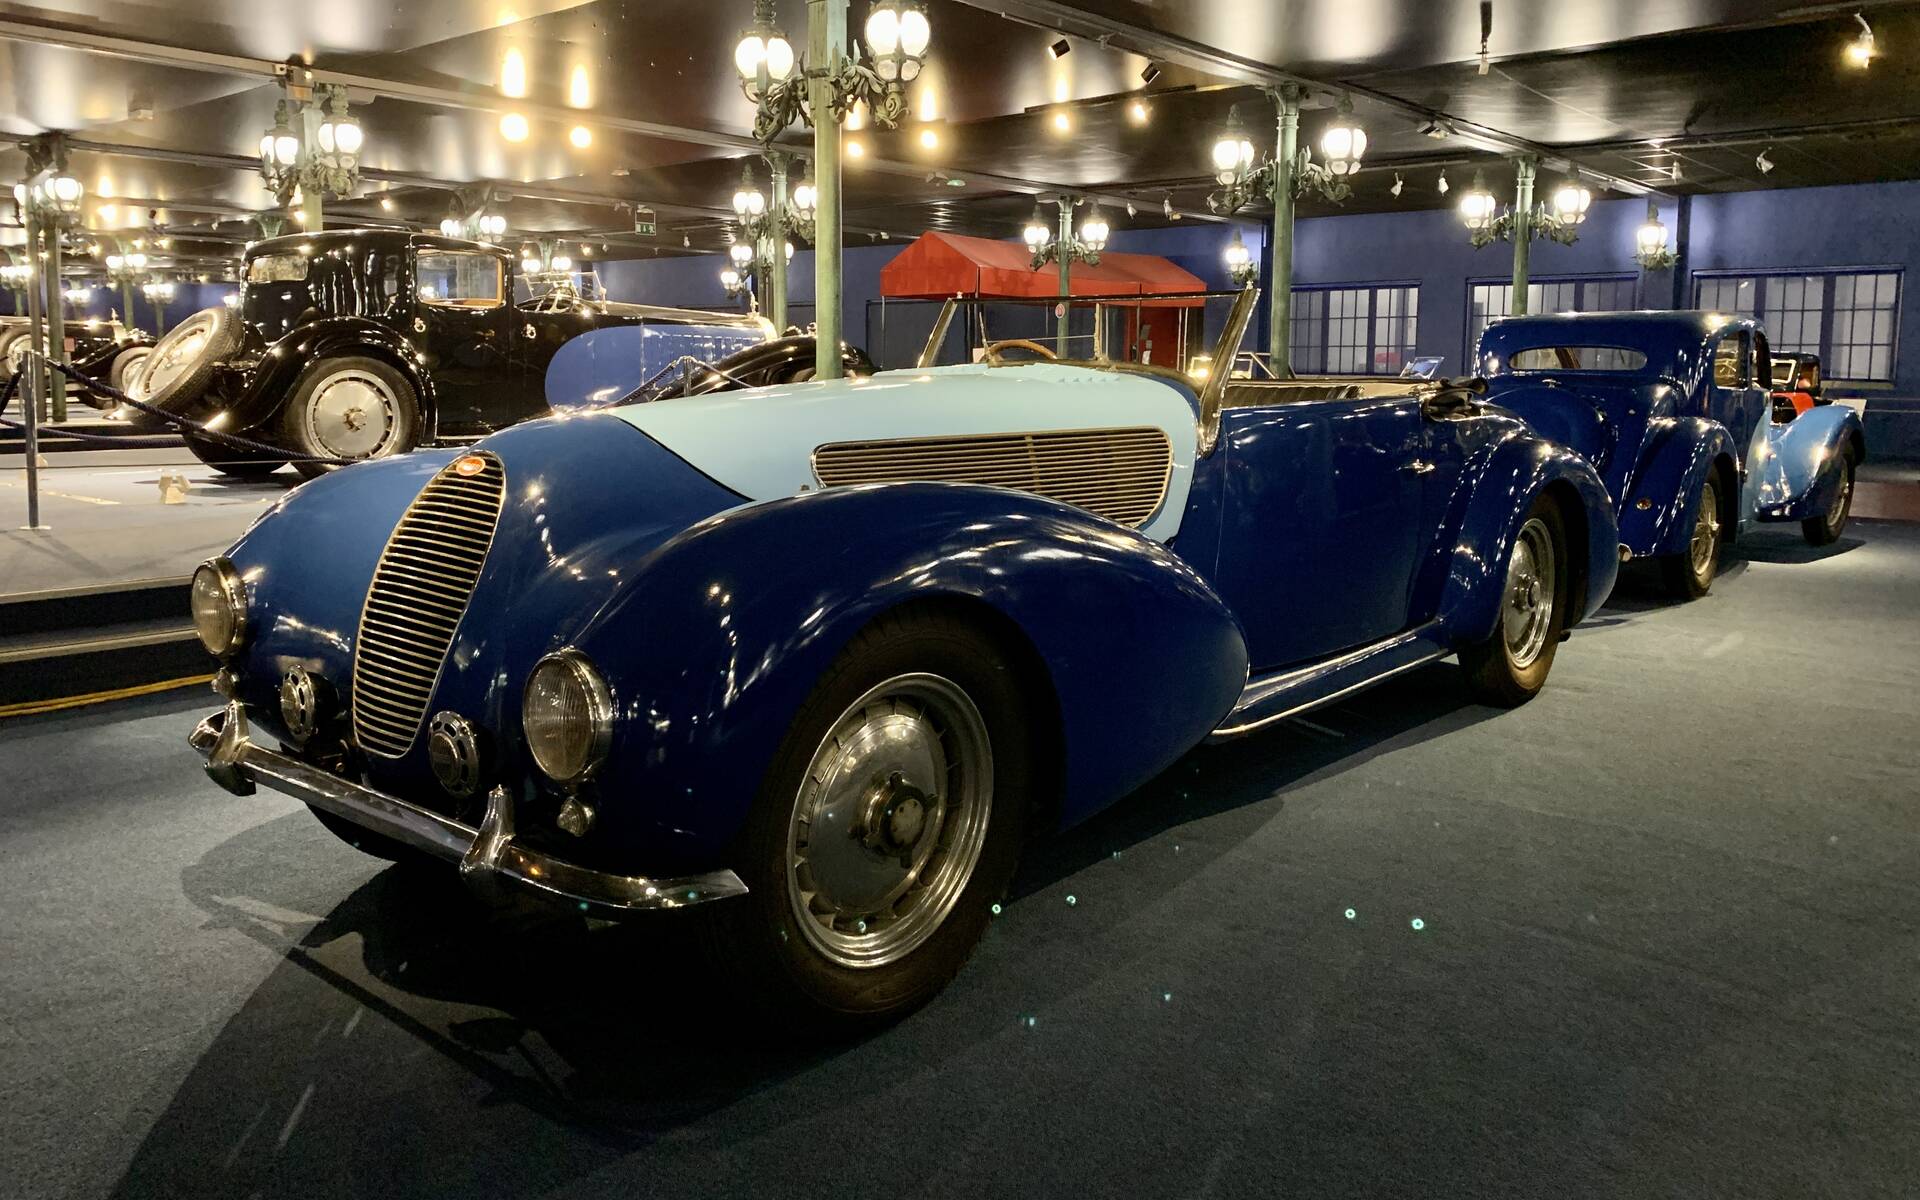 En photos : une centaine de Bugatti réunies dans un même musée 503097-en-photos-des-dizaines-de-bugatti-reunies-dans-un-meme-musee